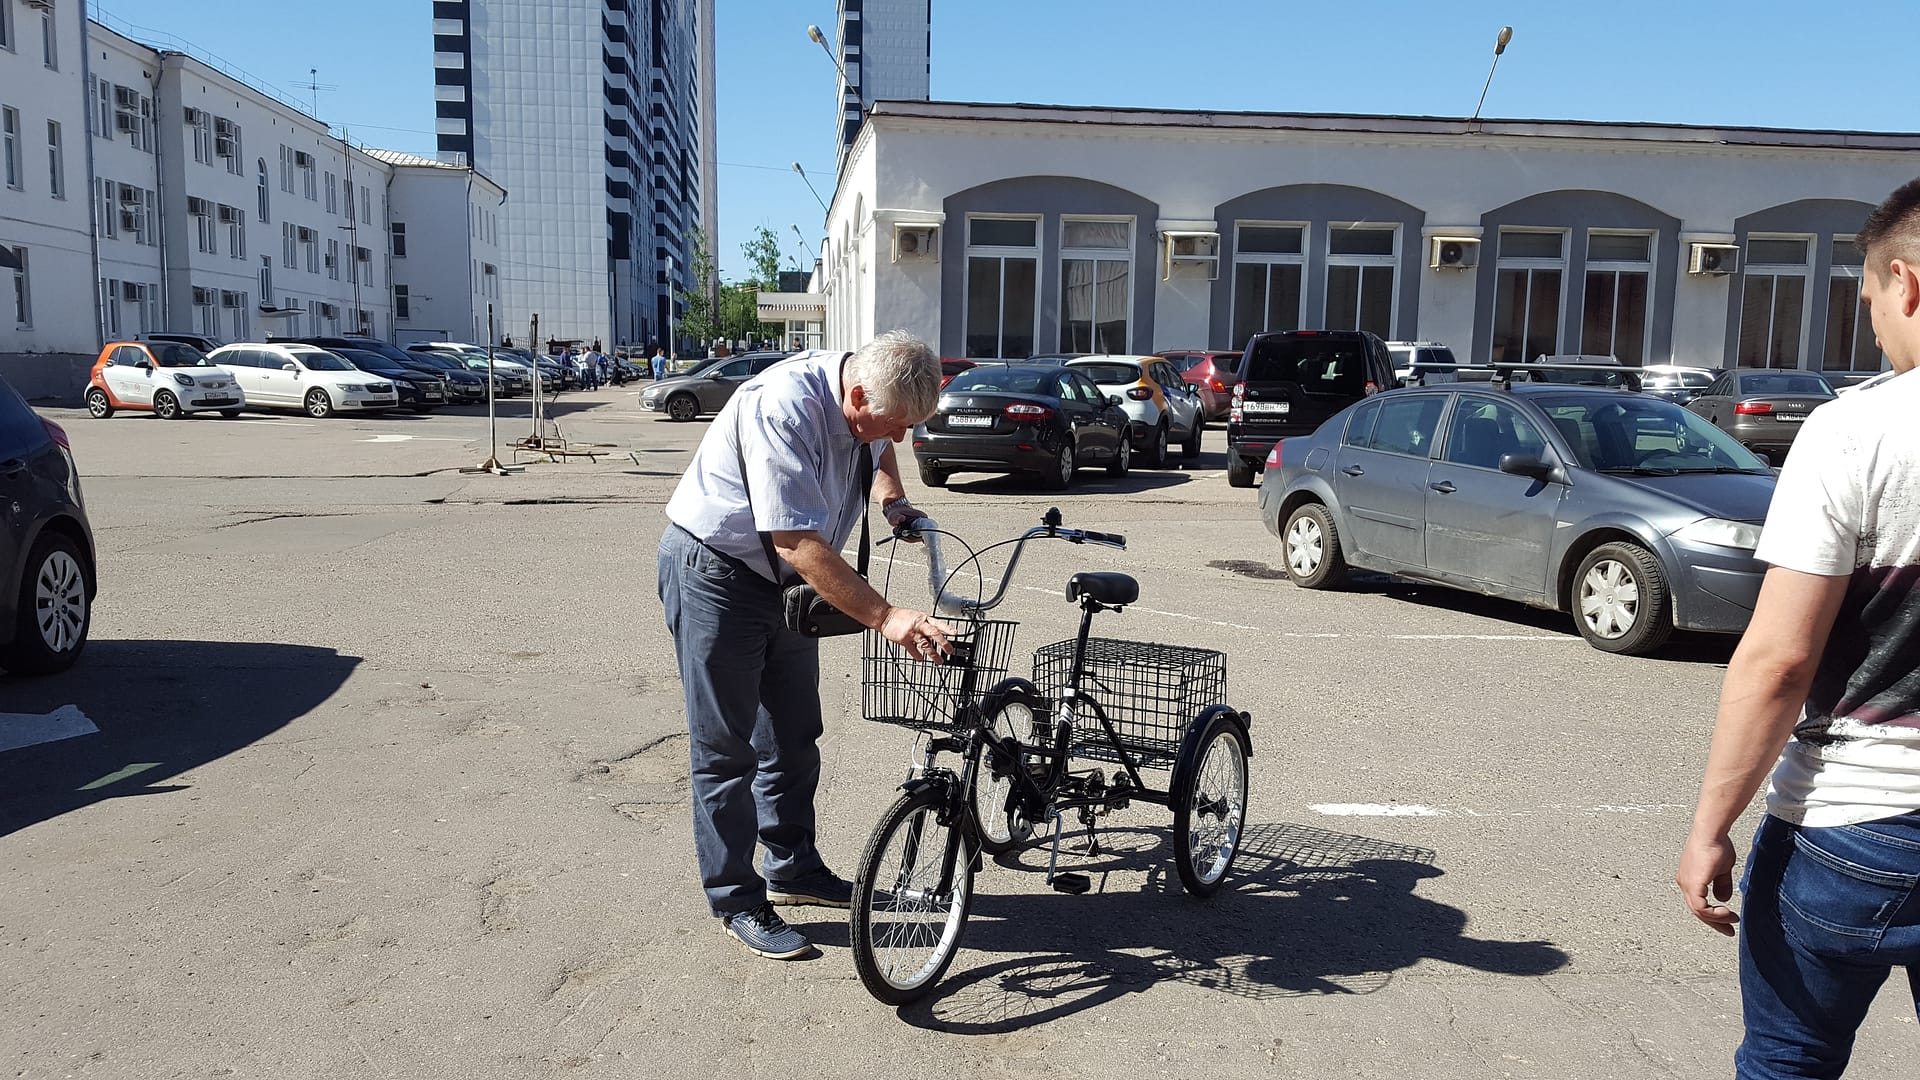 Трехколесный складной велосипед для взрослых DOONKAN Trike